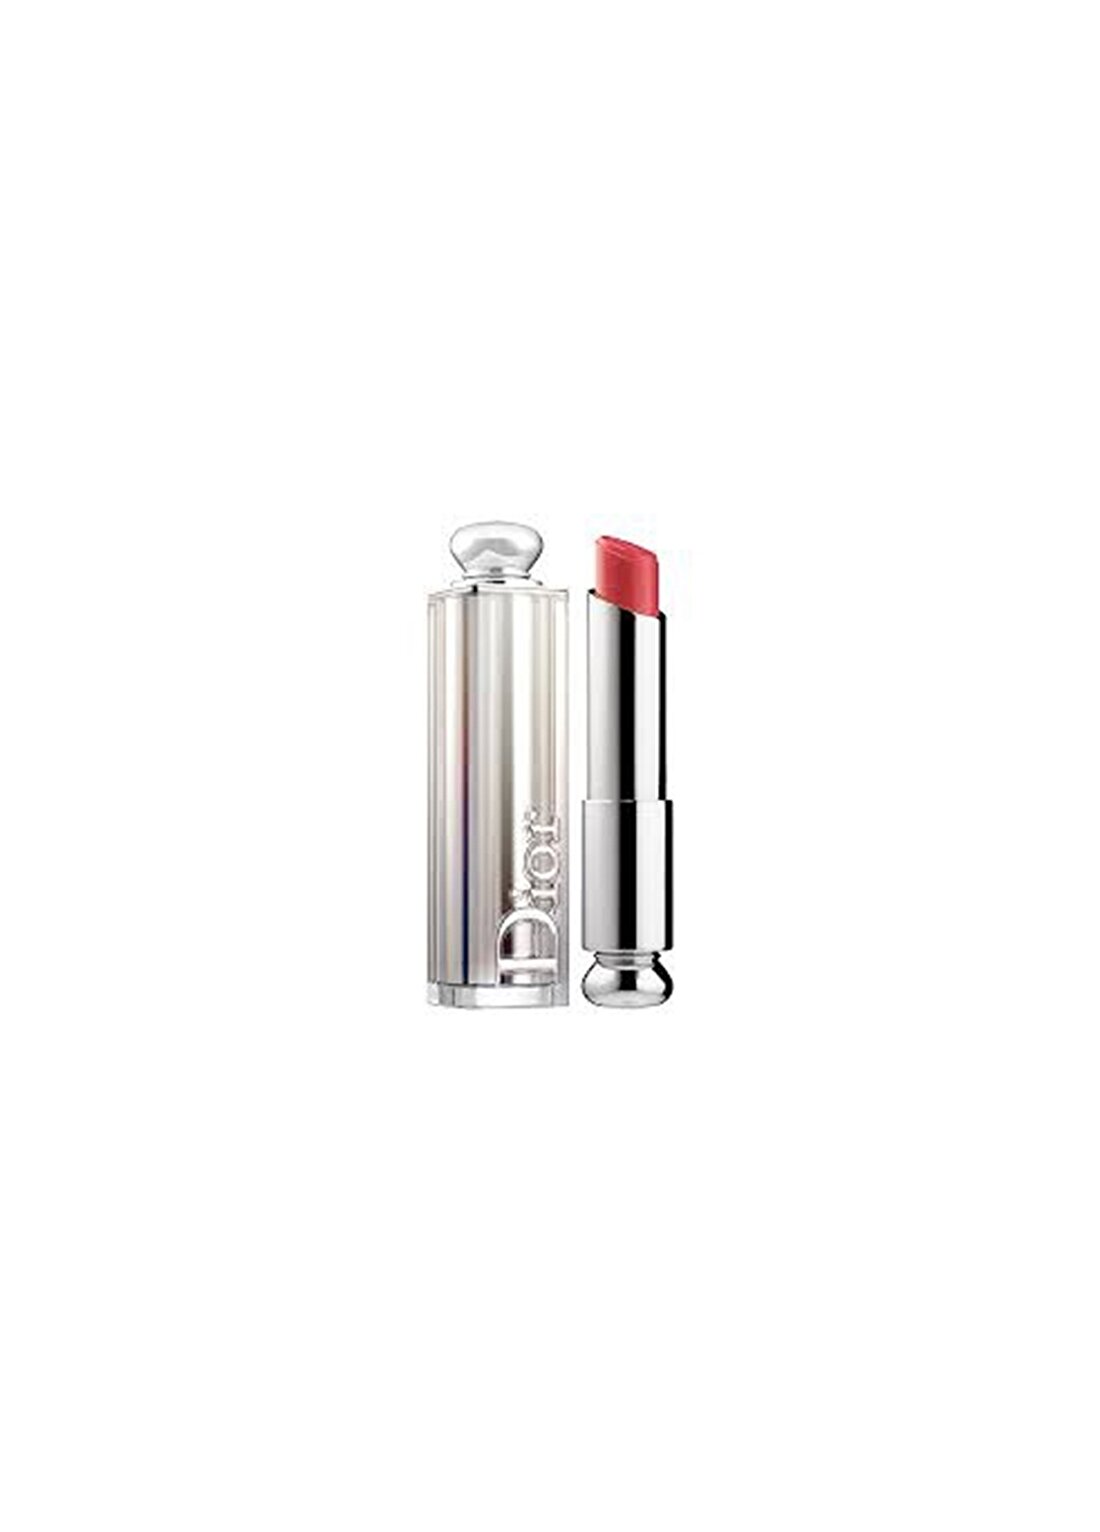 Dior Addict Lipstick 643 Diablotine Ruj